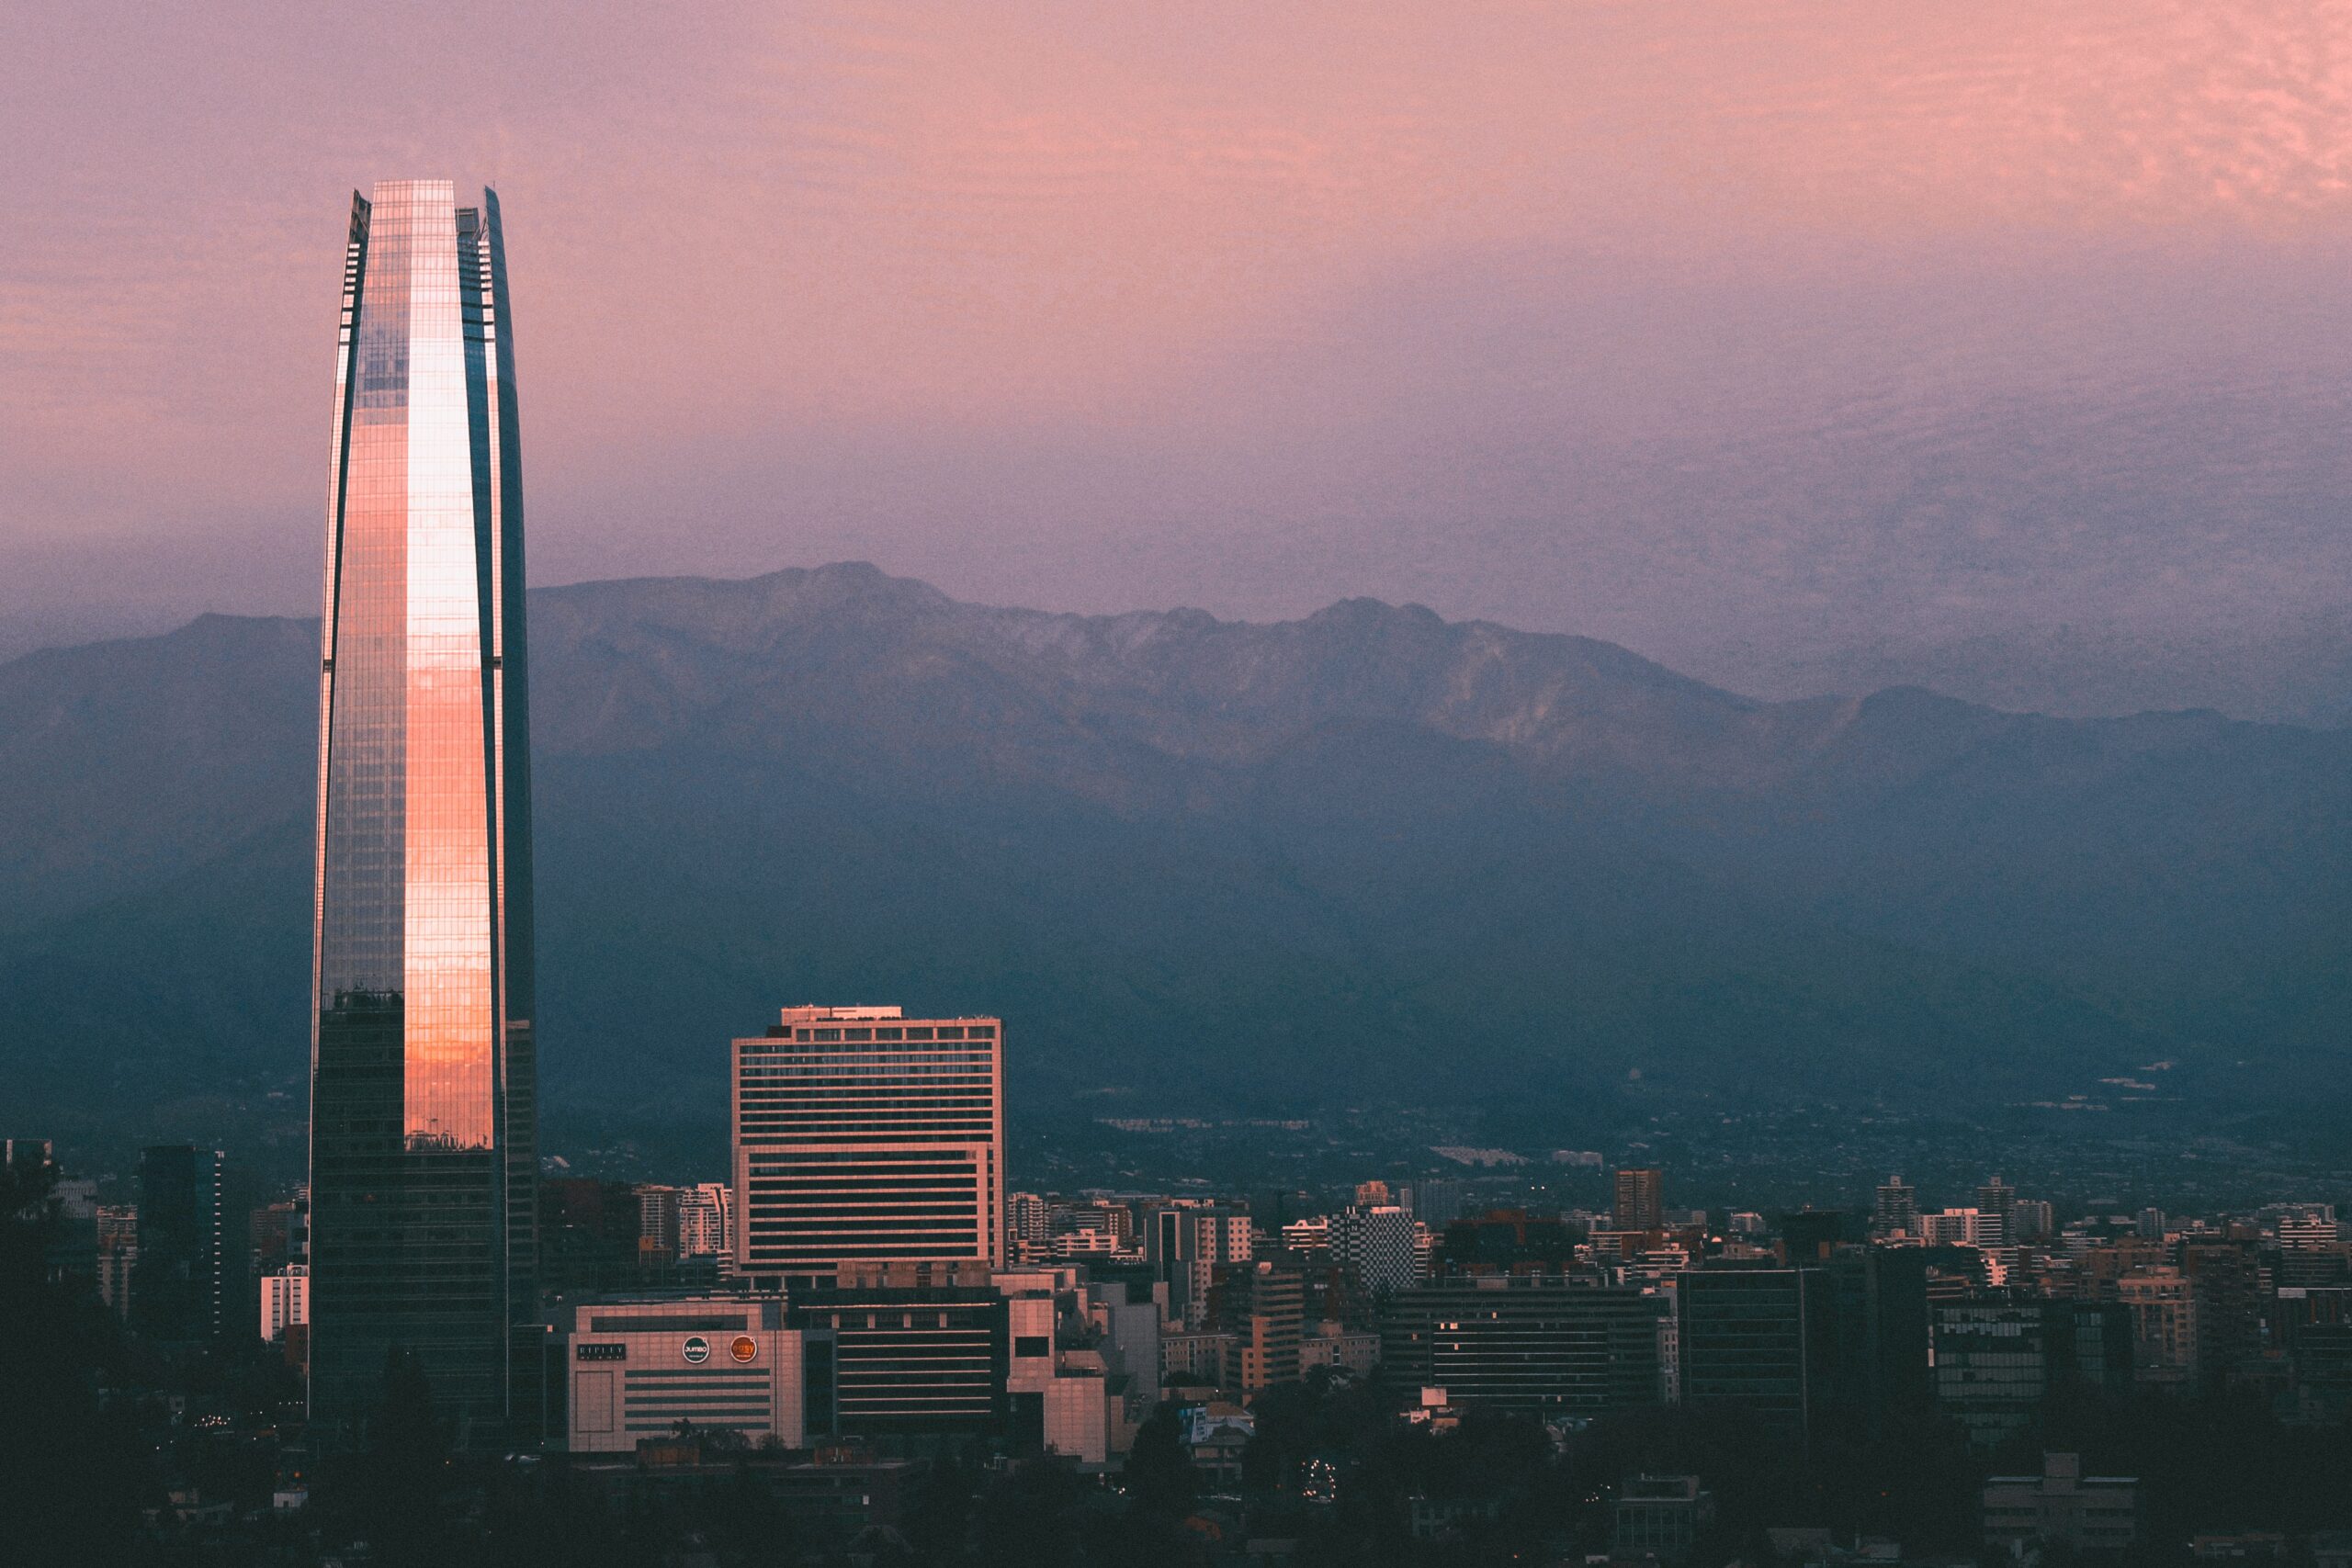 Vista do Sky Costanera, Santiago, Chile durante o dia com prédio enorme em volta de outros edifícios.